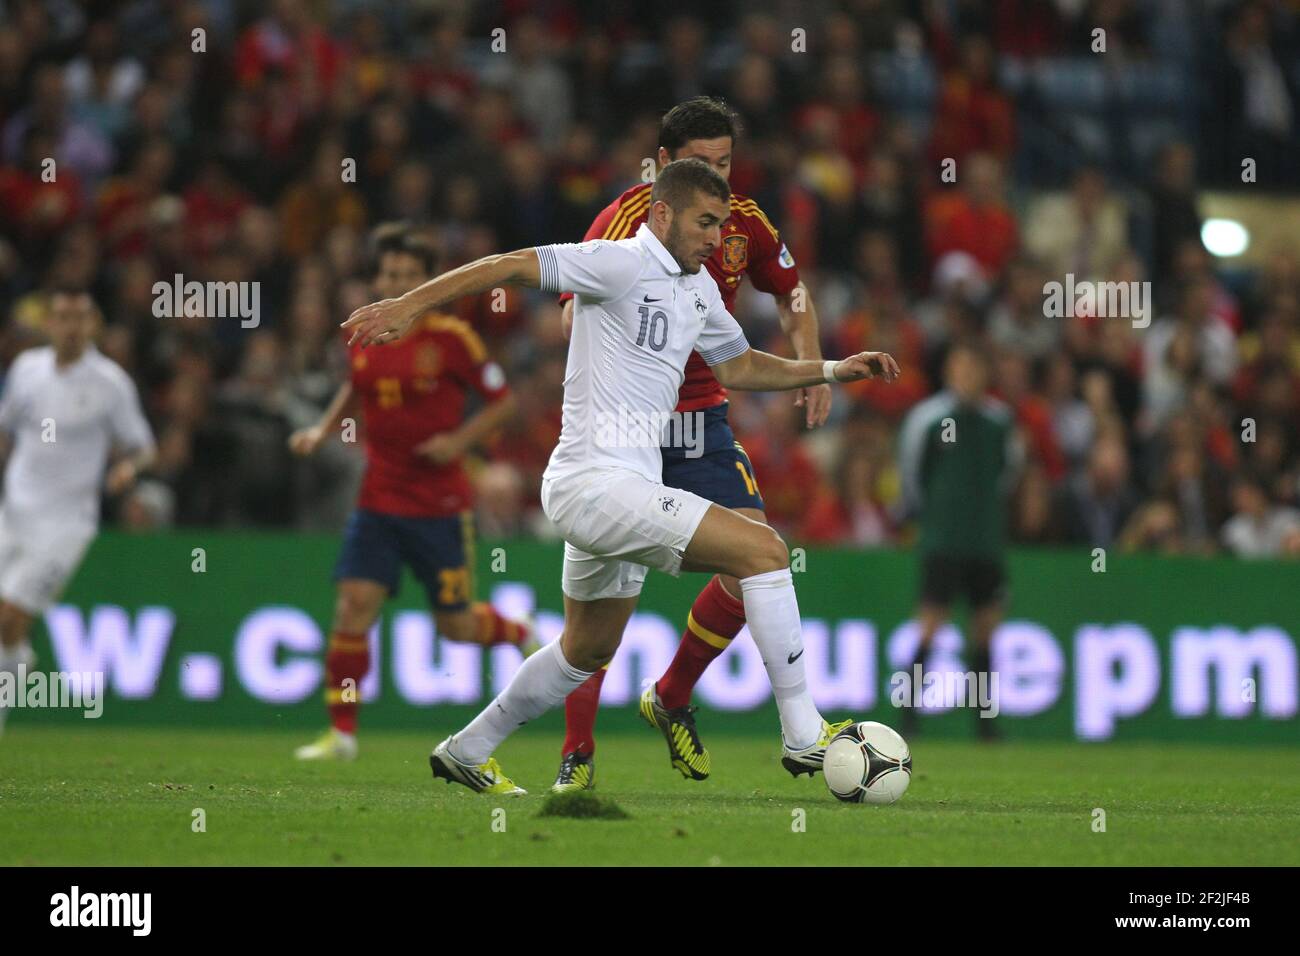 FUSSBALL - FIFA FUSSBALL-WELTMEISTERSCHAFT 2014 - QUALIFYING - SPANIEN V FRANKREICH - 16/10/2012 - FOTO MANUEL BLONDAU / AOP PRESSE / DPPI - KARIM BENZEMA Stockfoto